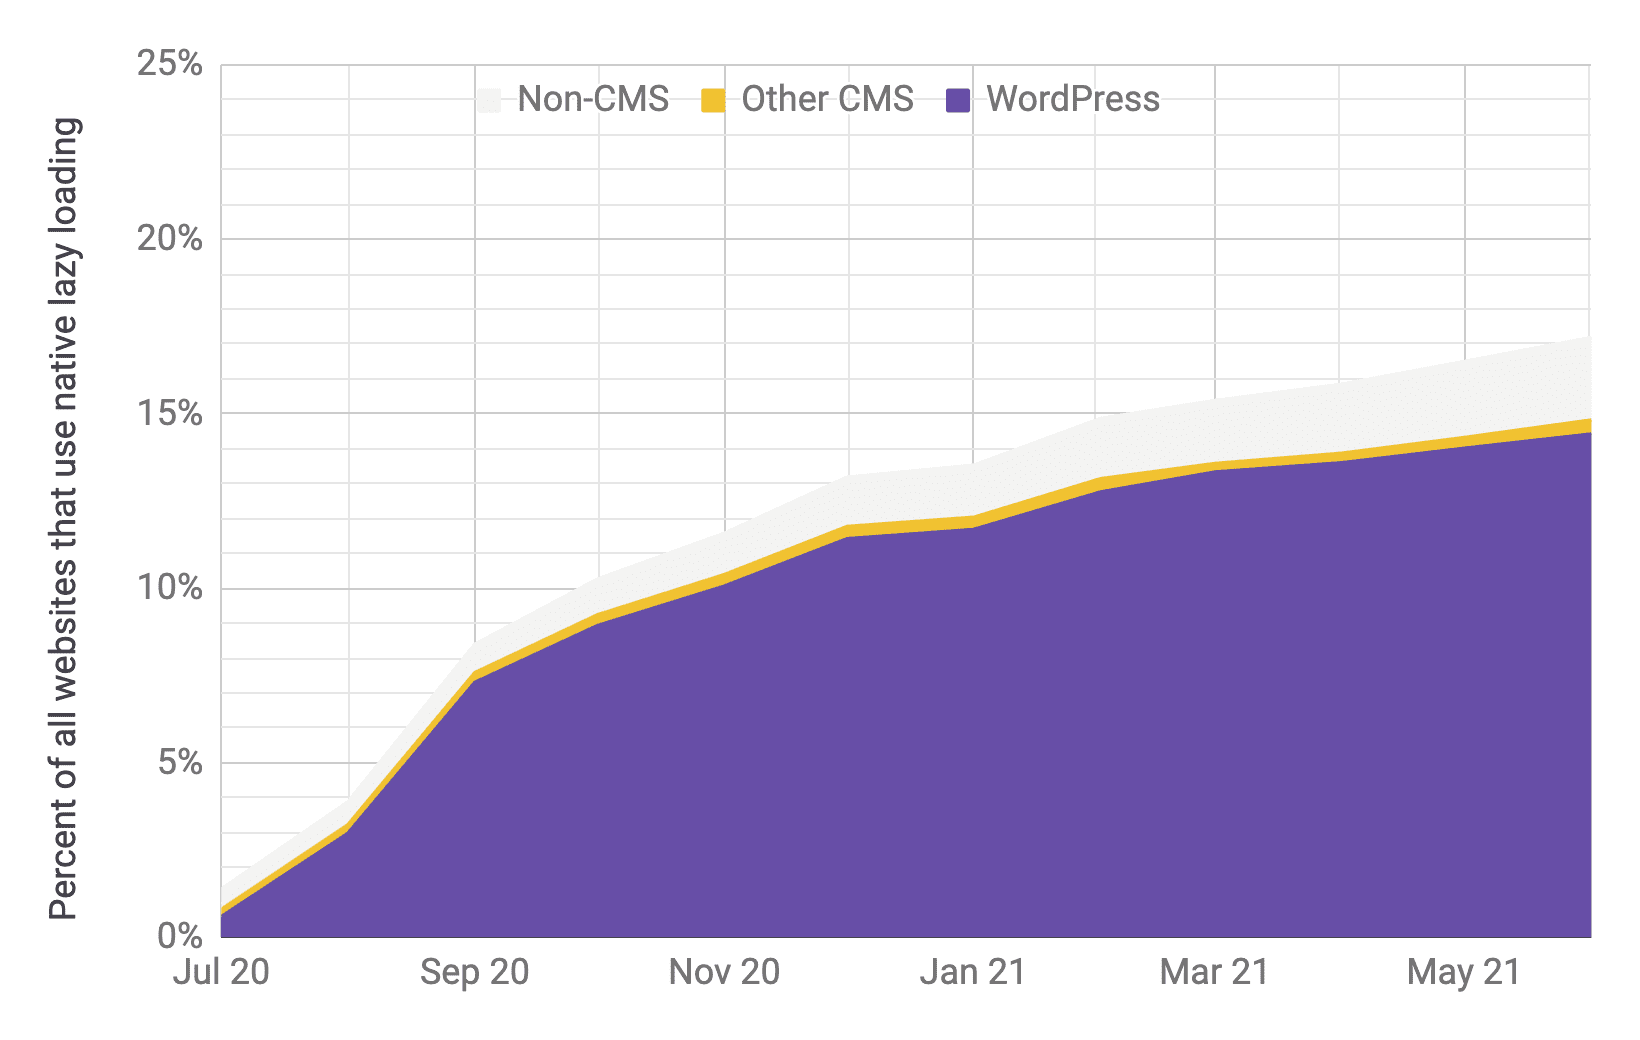 Biểu đồ chuỗi thời gian về tỷ lệ sử dụng tính năng tải từng phần với WordPress là nền tảng chiếm ưu thế so với các CMS khác và các nền tảng không phải CMS khác, với tỷ lệ tương tự như biểu đồ trước đó. Tổng mức sử dụng được hiển thị đã tăng nhanh chóng từ 1% lên 17% từ tháng 7 năm 2020 đến tháng 6 năm 2021.